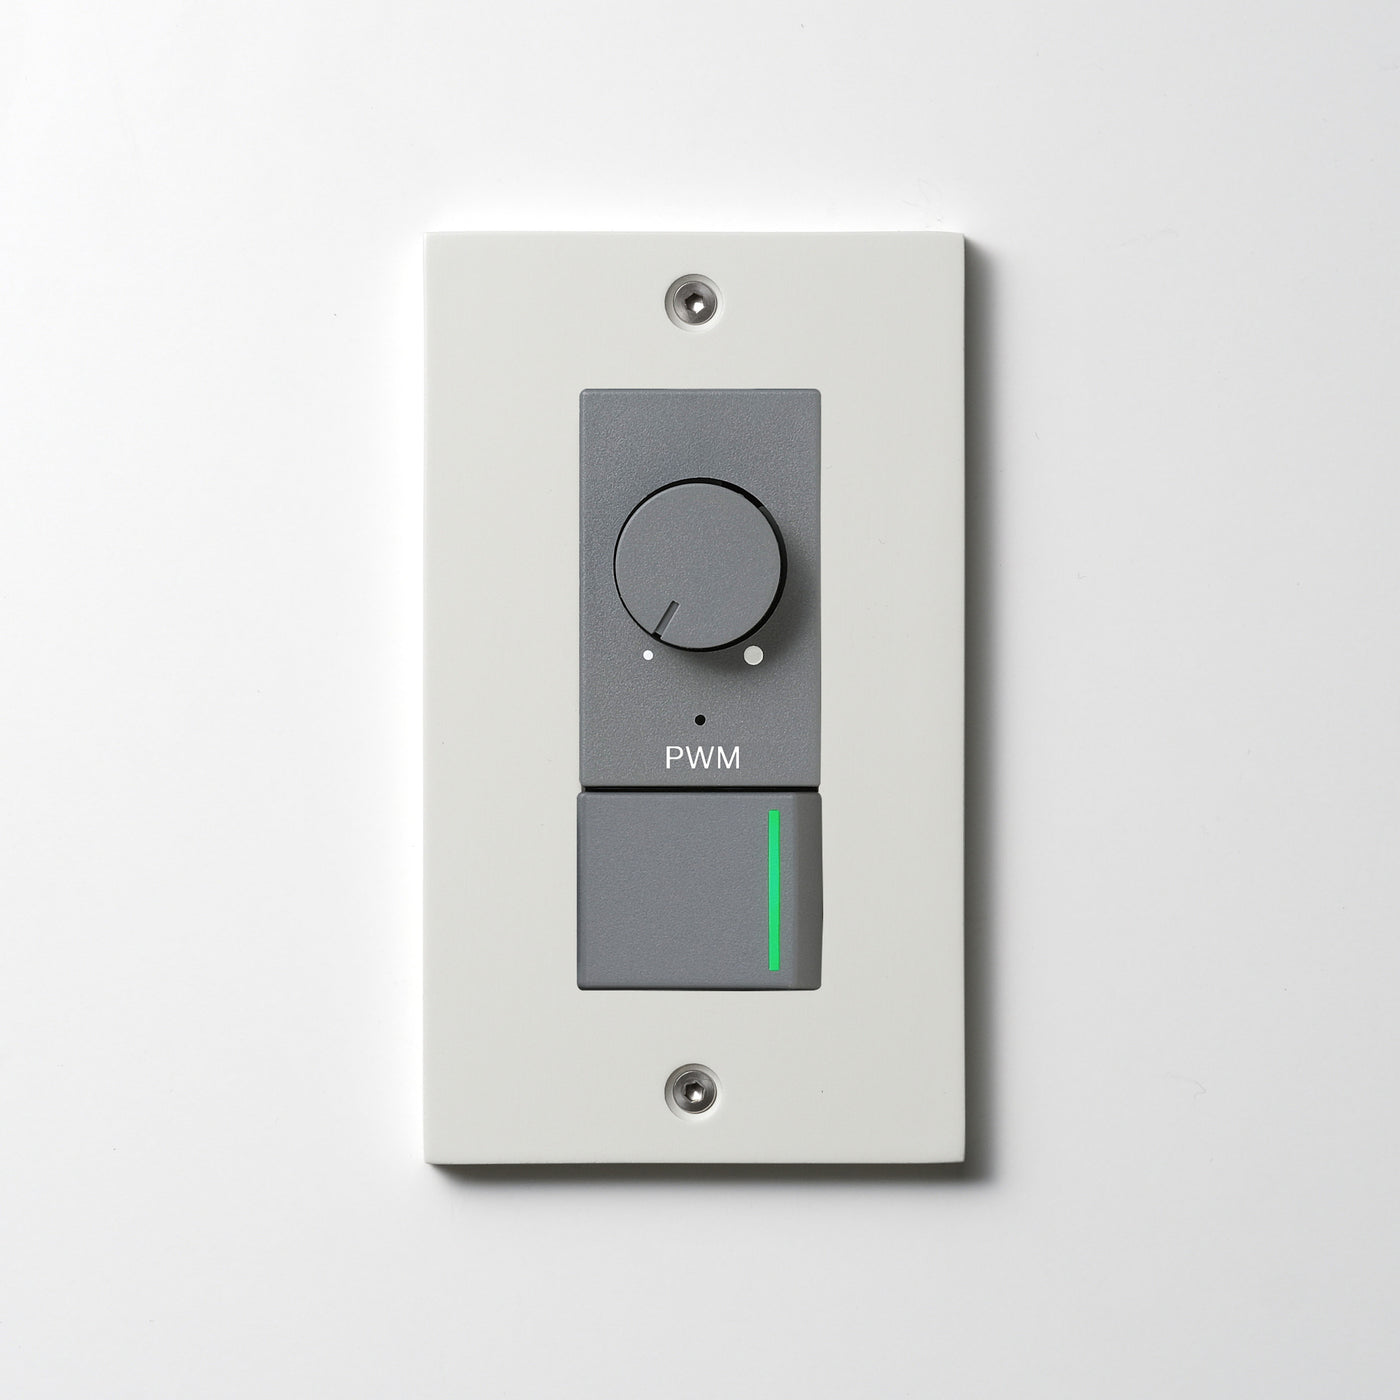 アルミダイキャスト（ホワイト）プレート  <br>+ NK PWM制御方式(1ch)ライトコントロール＋片切、3路ガイドランプ（グリーン）スイッチ　 グレー